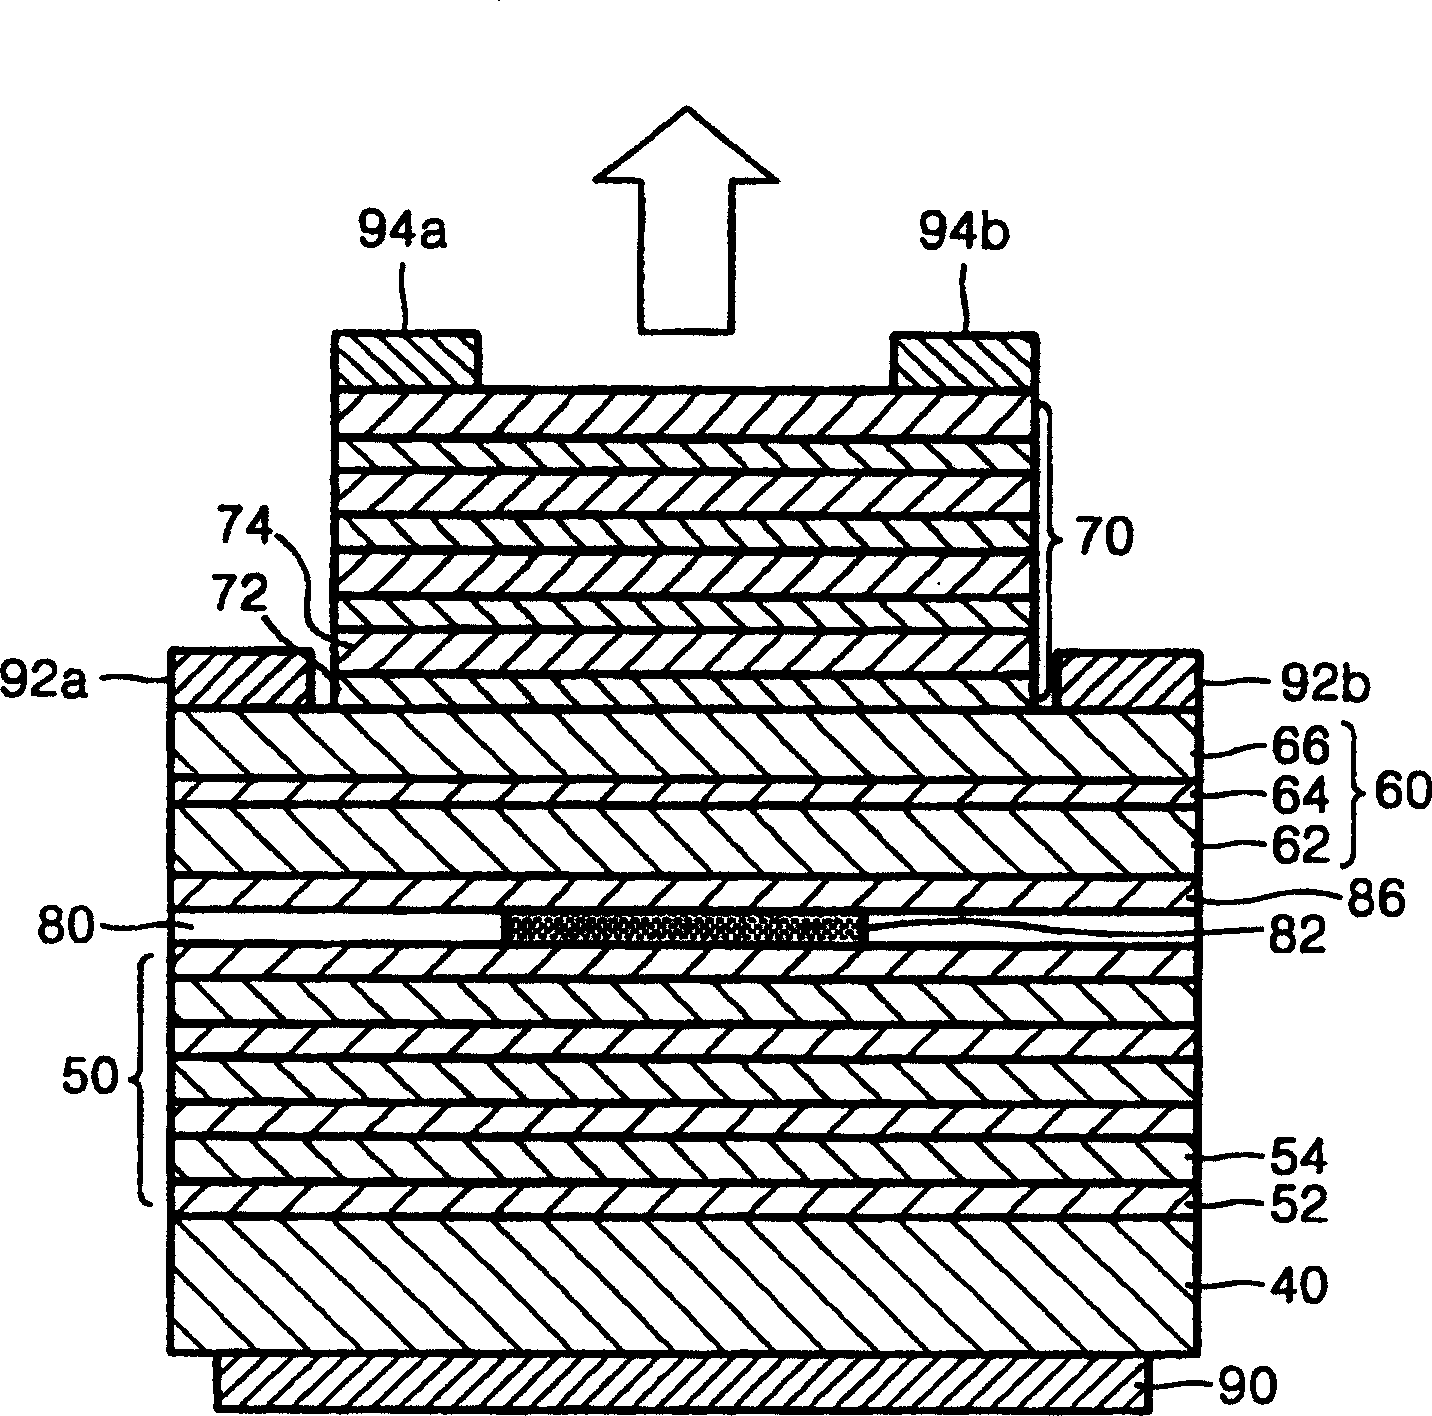 Wave length adjustable vertical cavity surface emitting laser diode